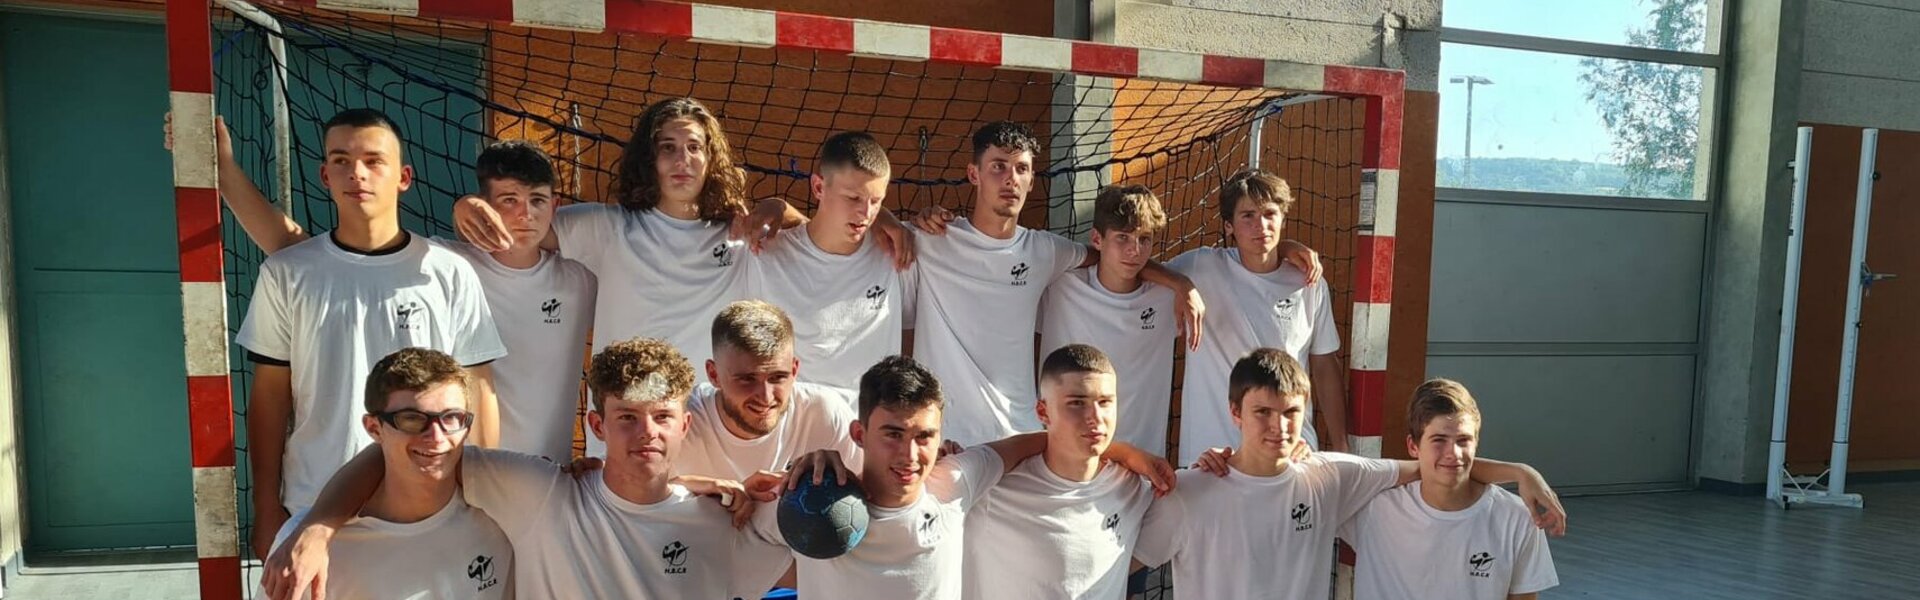 Handball Club Riomois - Riom (63) - Equipes et Catégories